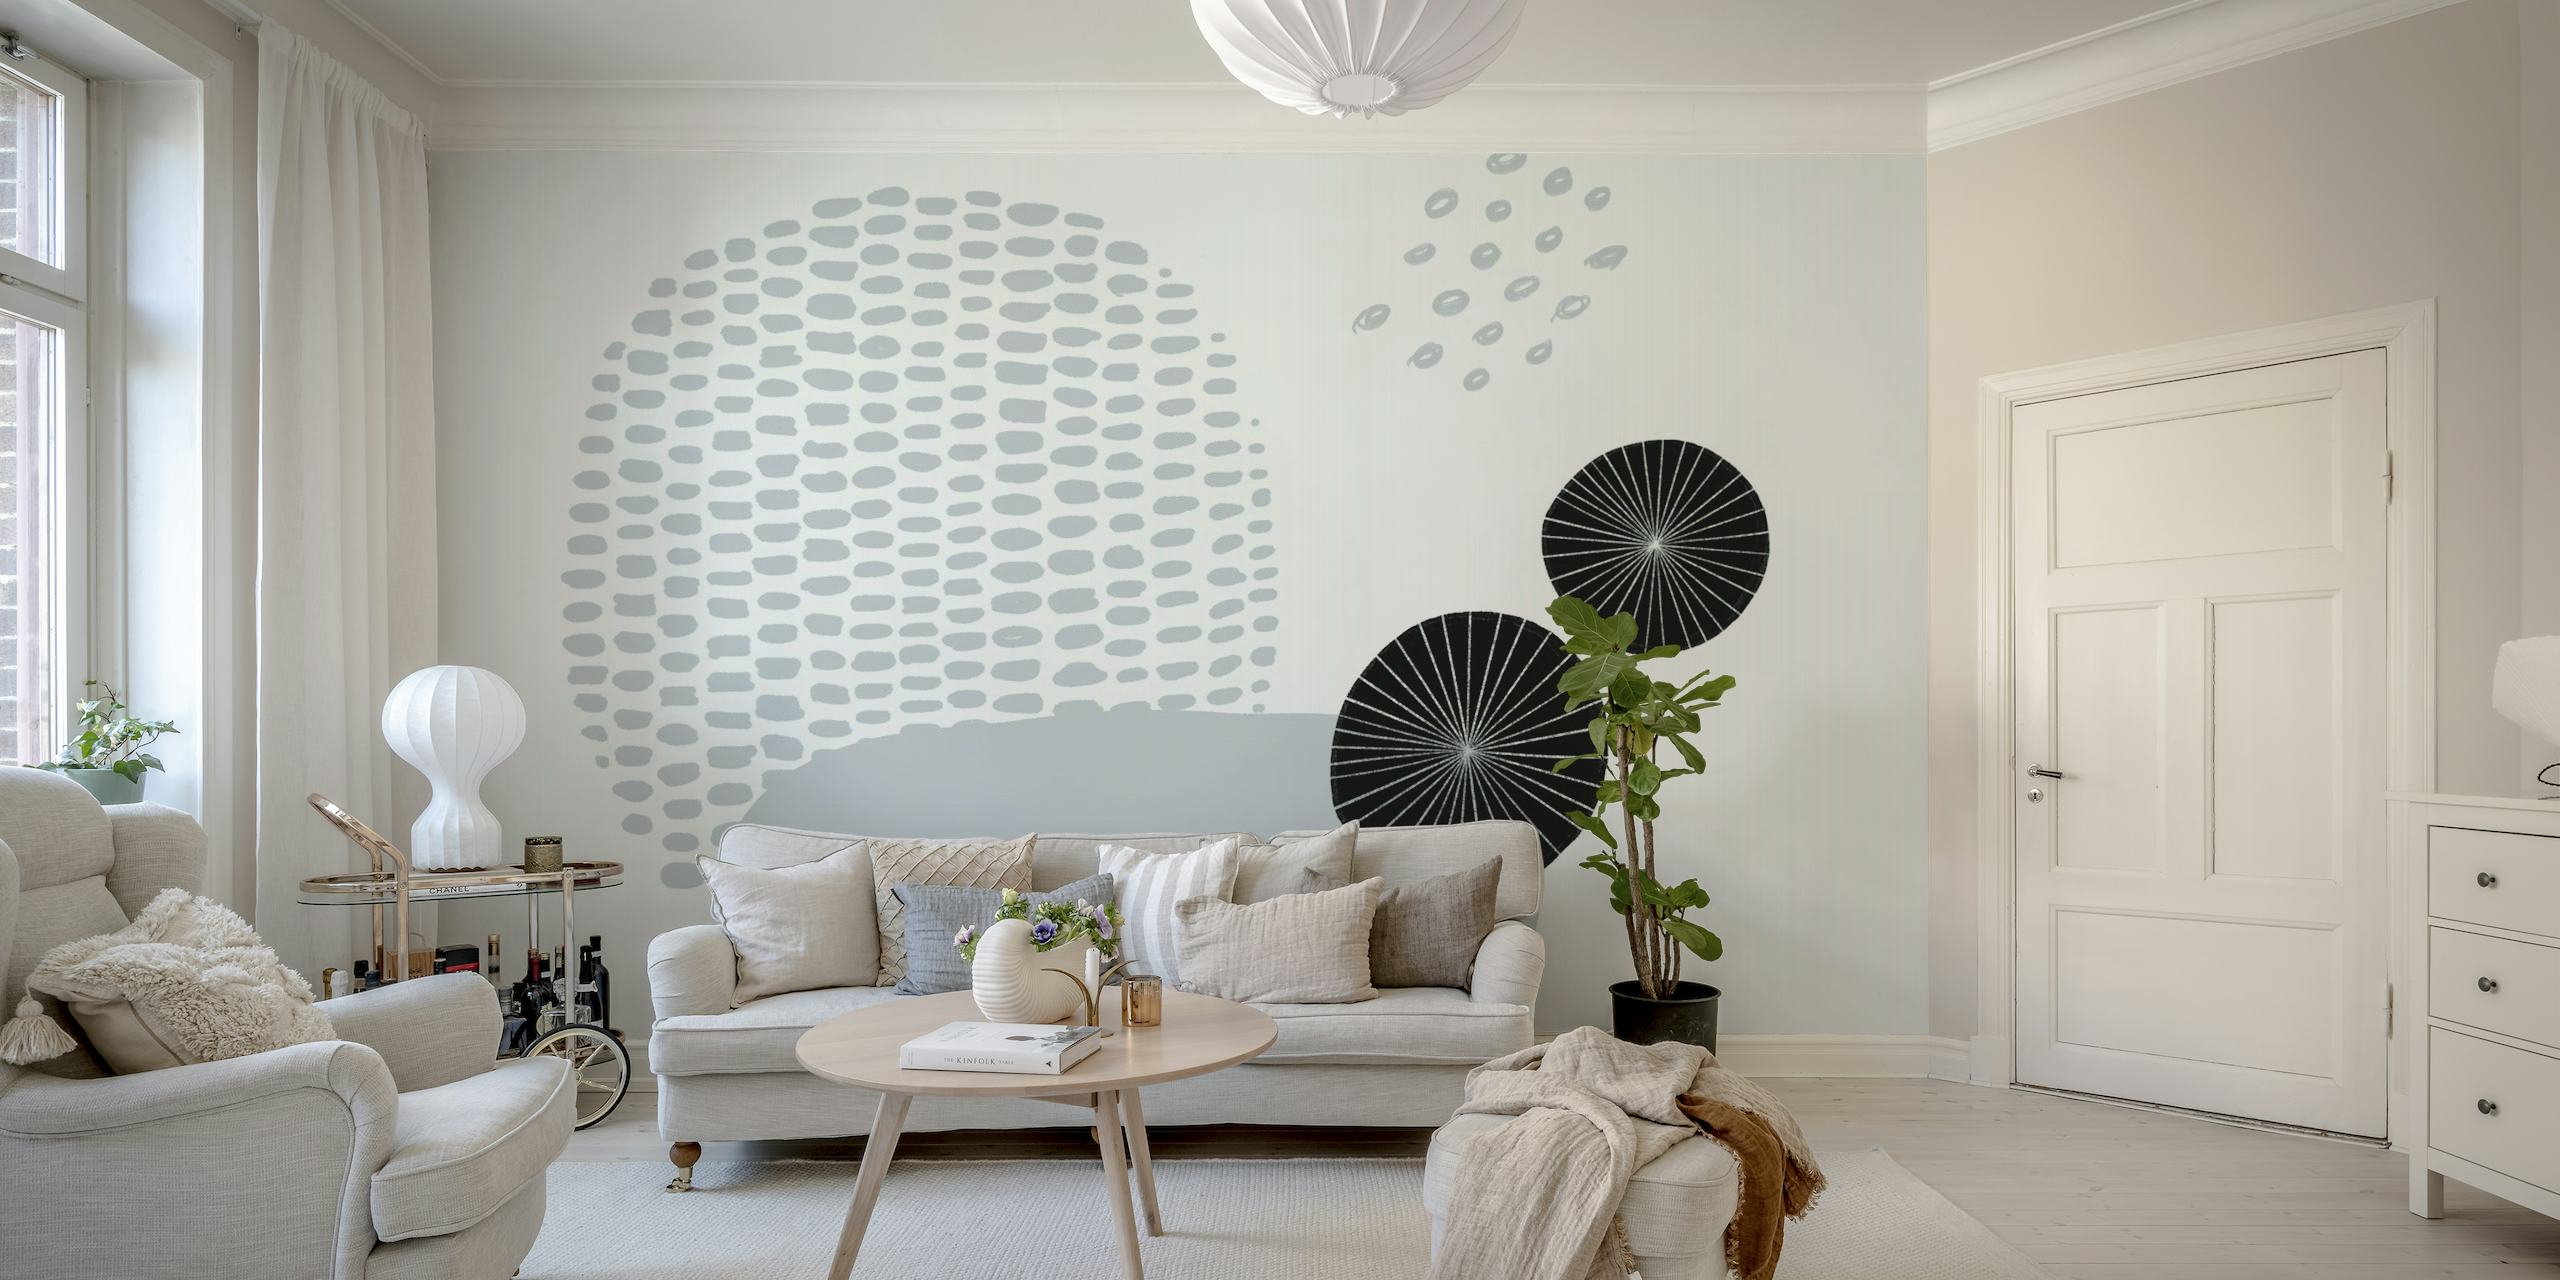 Papier peint abstrait en niveaux de gris avec des formes sphériques et des motifs de points